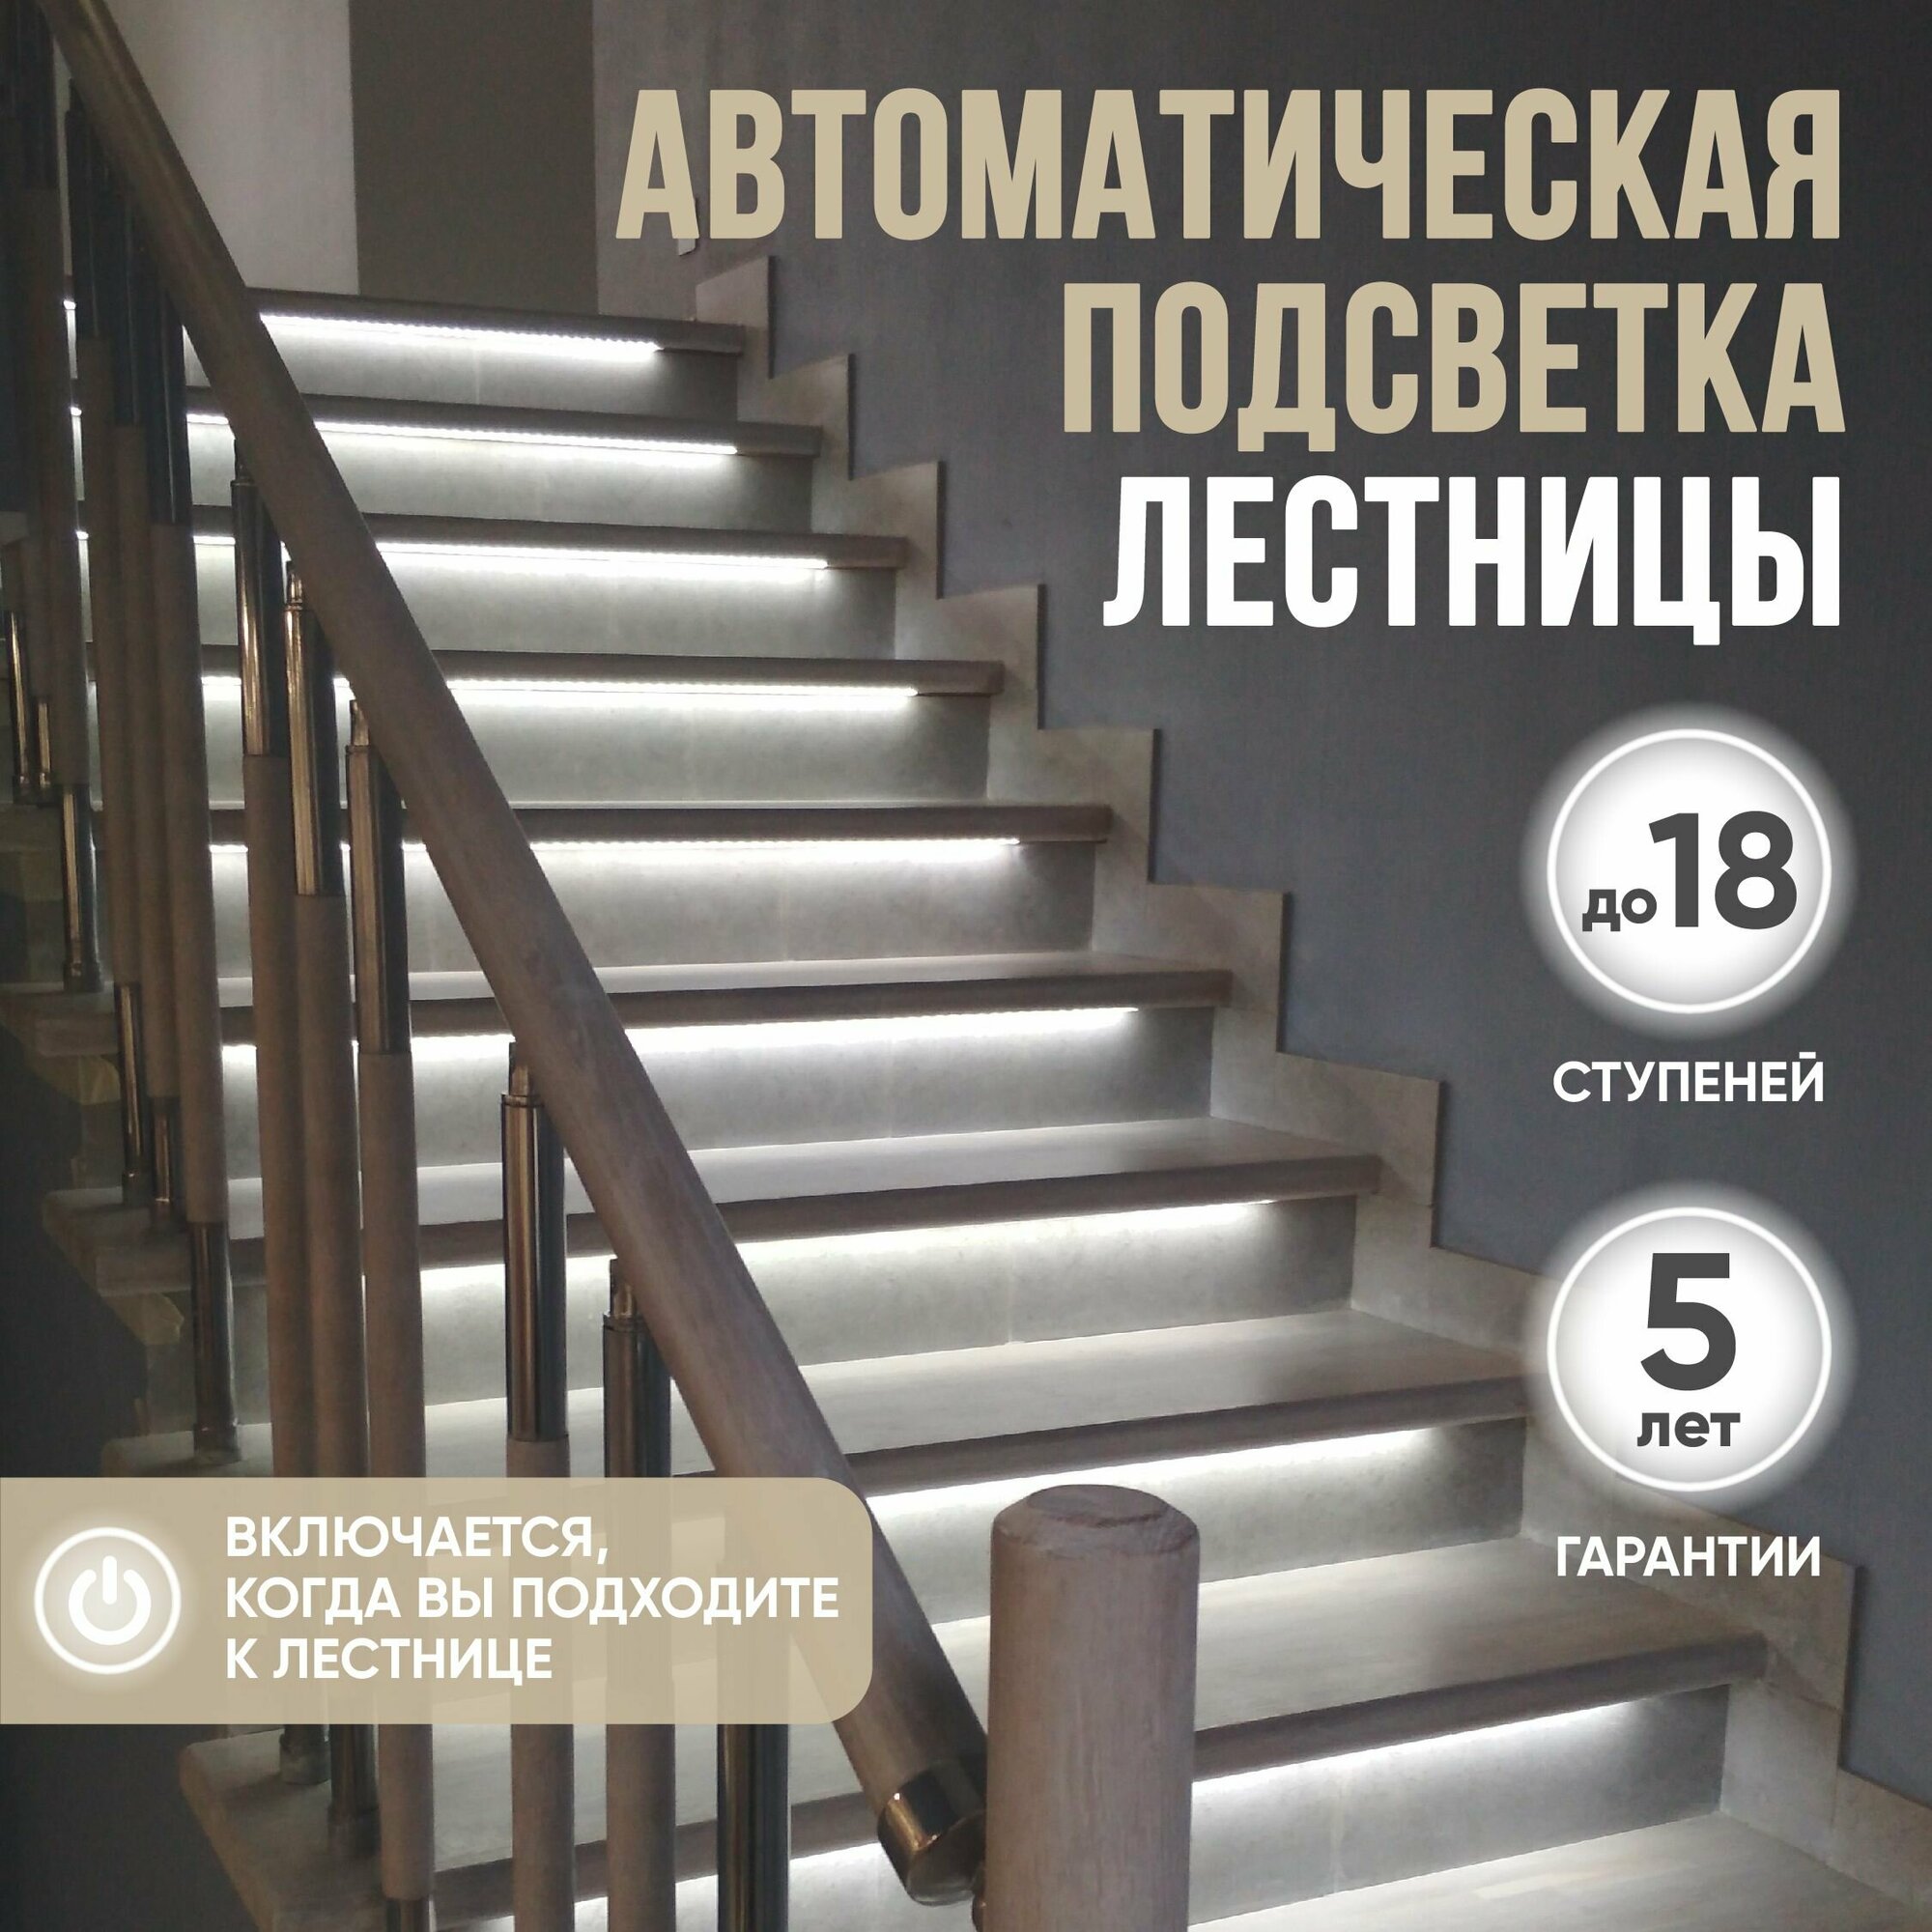 Базовый комплект автоматической подсветки лестницы с инфракрасными датчиками движения, до 18 ступеней. Система умный дом SmartLum